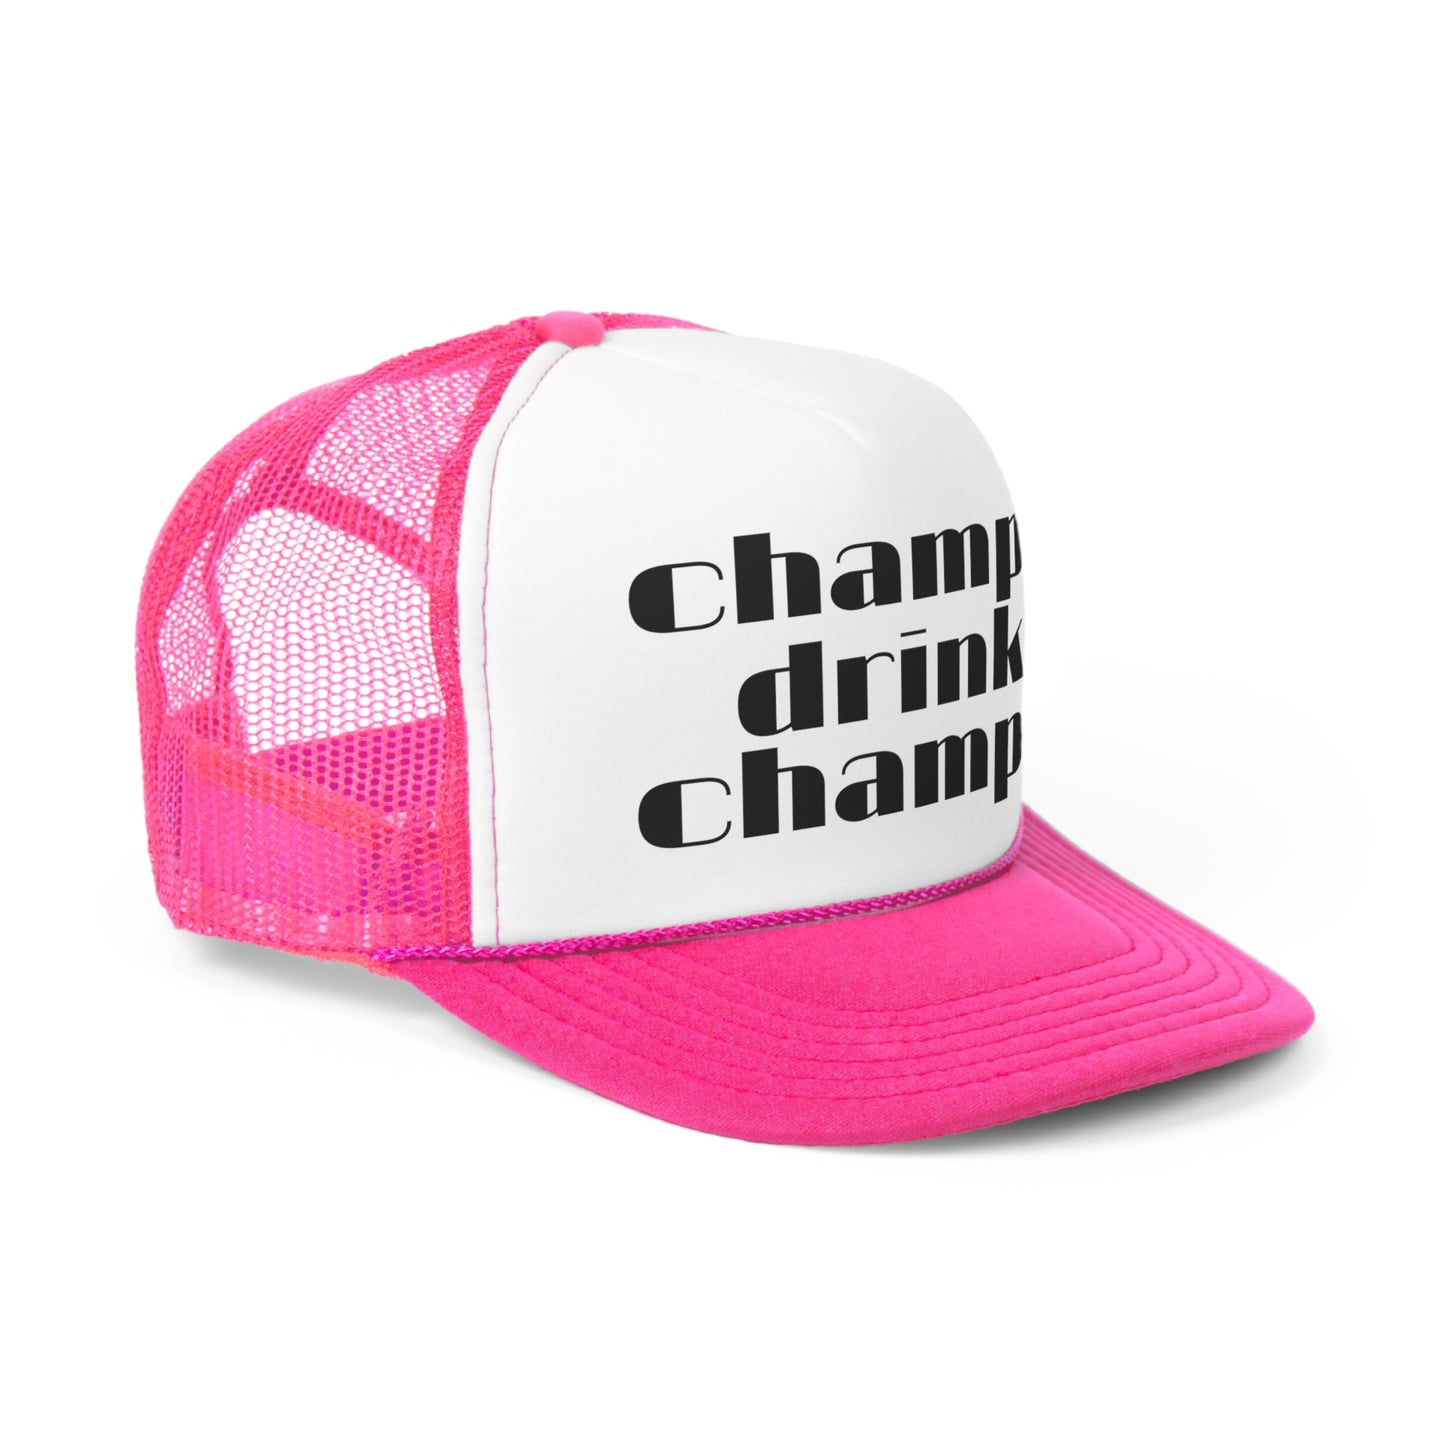 Champagne Trucker Hat, Champagne Hat, Trucker Hat, Champs Drink Champs Hat, Champagne